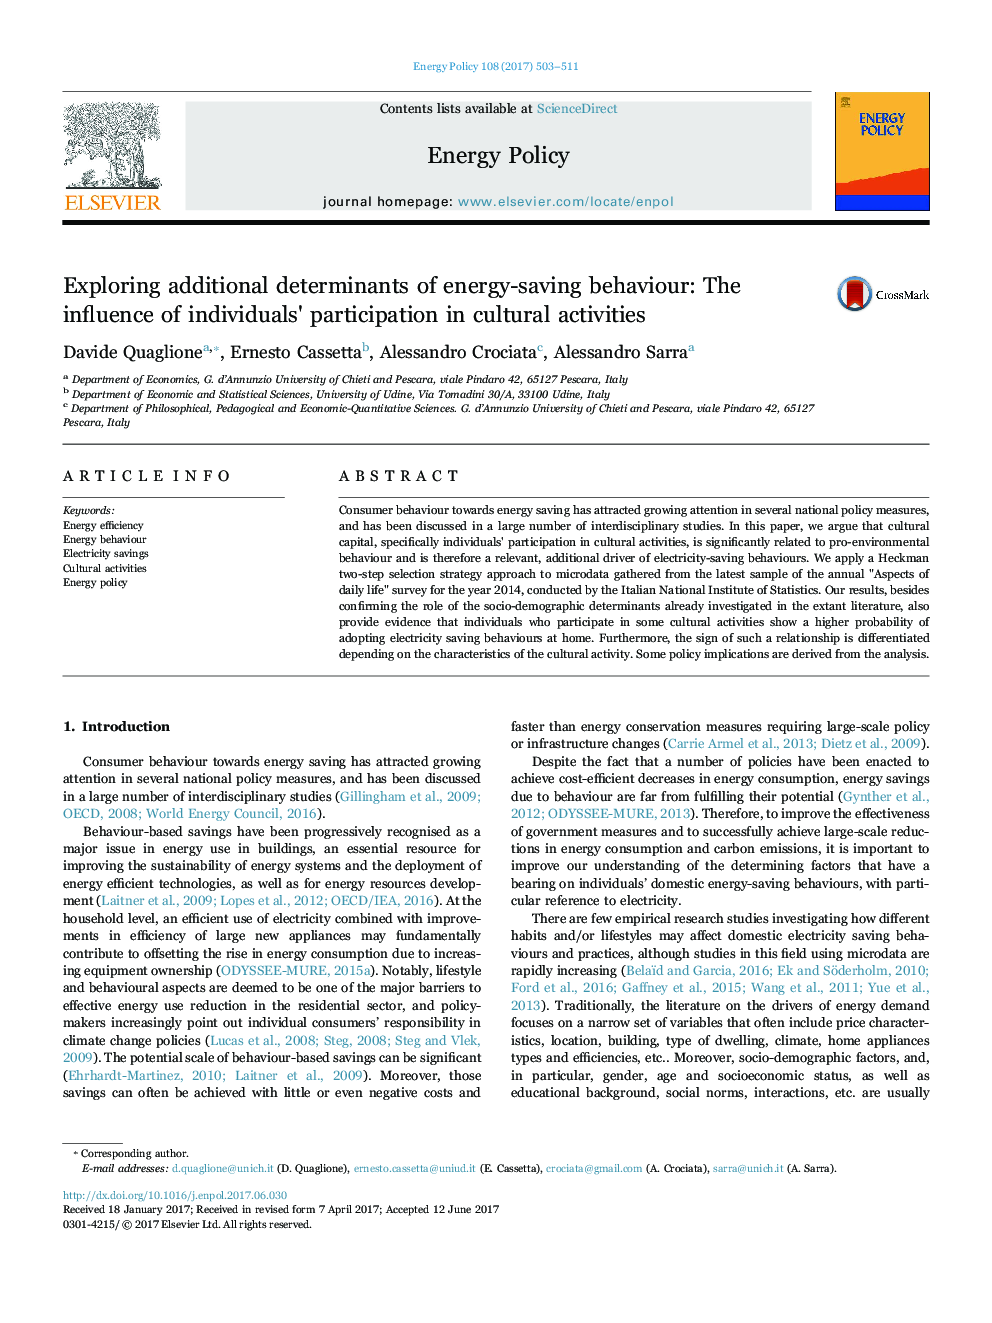 بررسی عوامل مؤثر بر رفتار صرفه جویی در انرژی: تأثیر مشارکت افراد در فعالیت های فرهنگی 